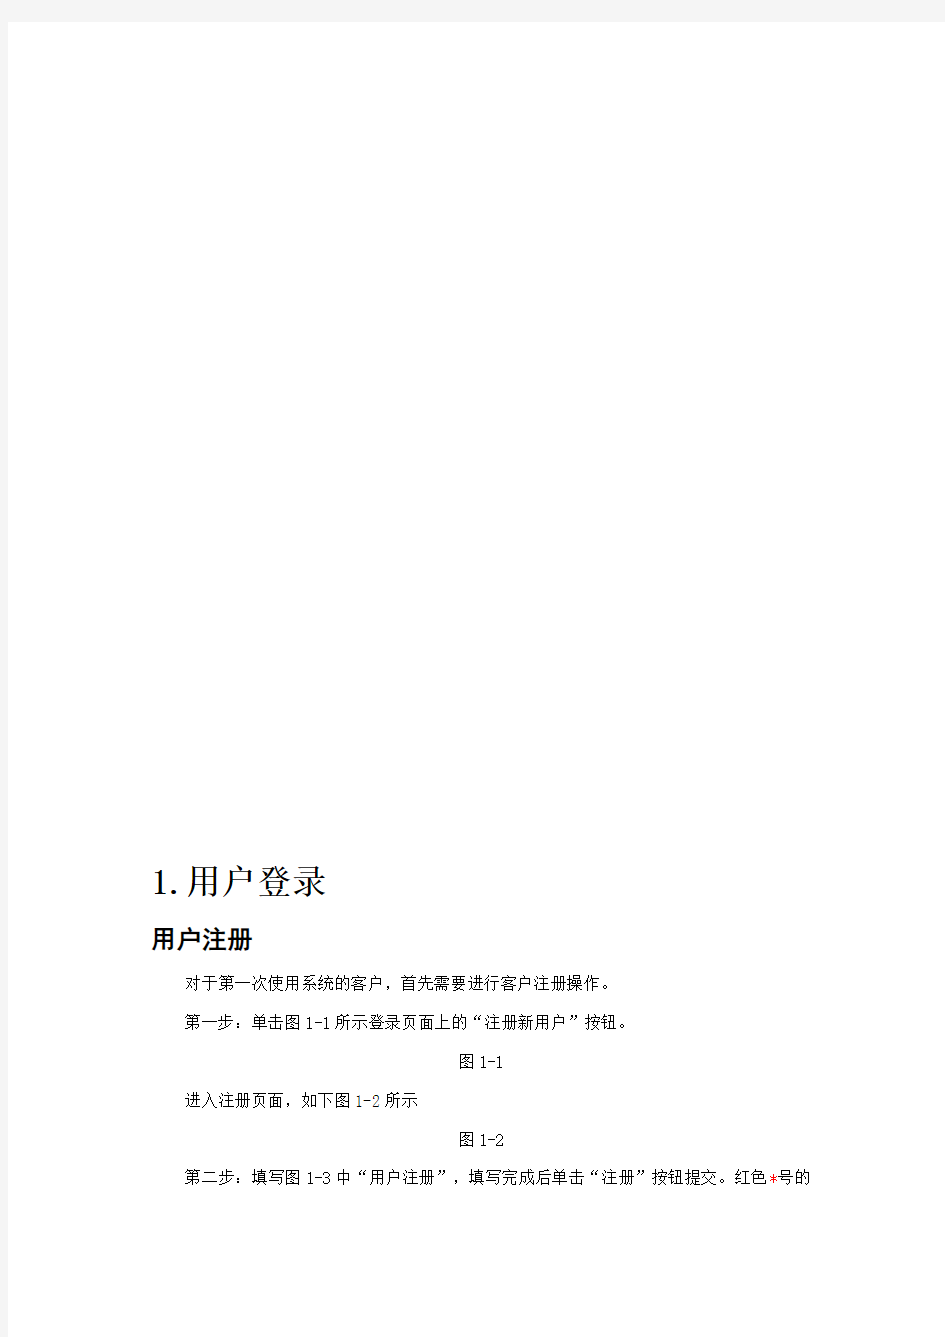 中国质量认证中心产品认证操作手册